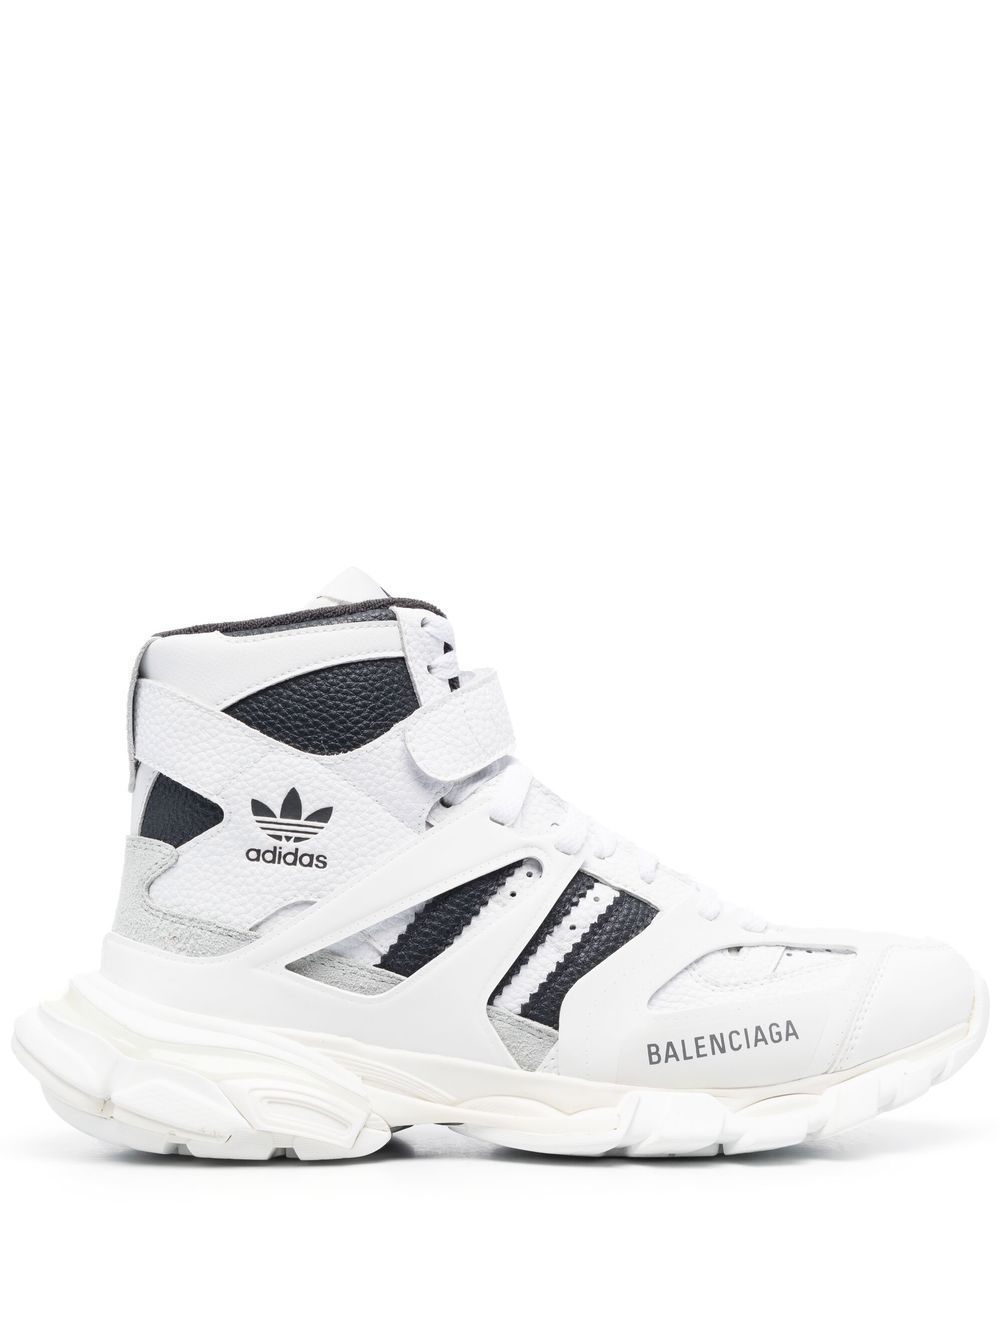 Balenciaga X Adidas High-top-sneakers In White